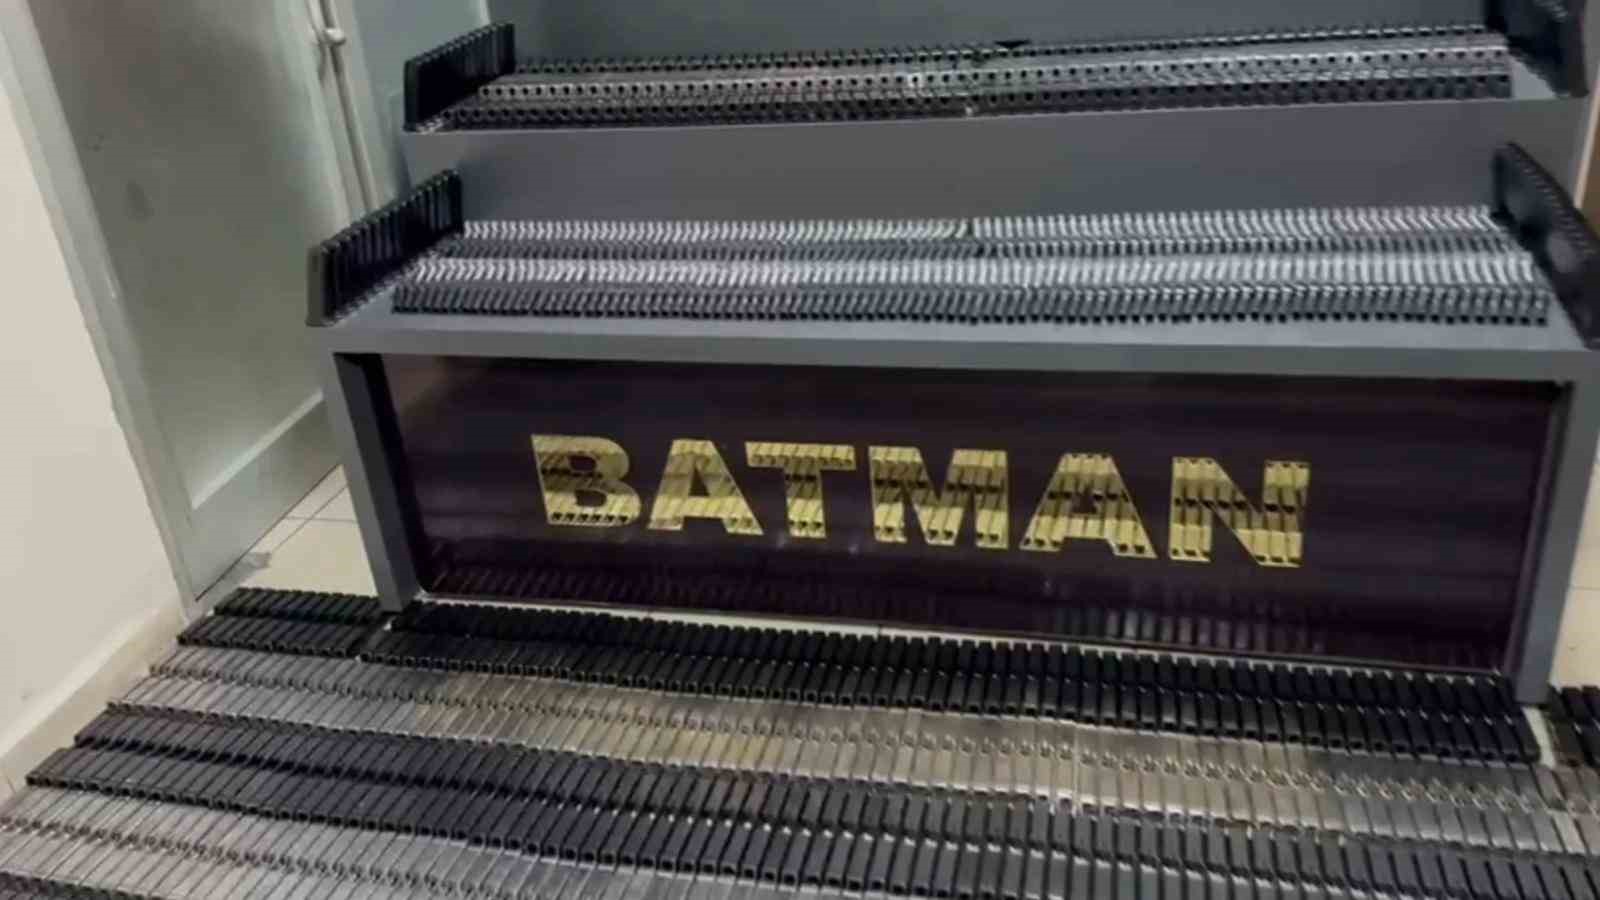 Batman’da duvar içindeki özel bölmede binlerce silah malzemesi ele geçirildi
